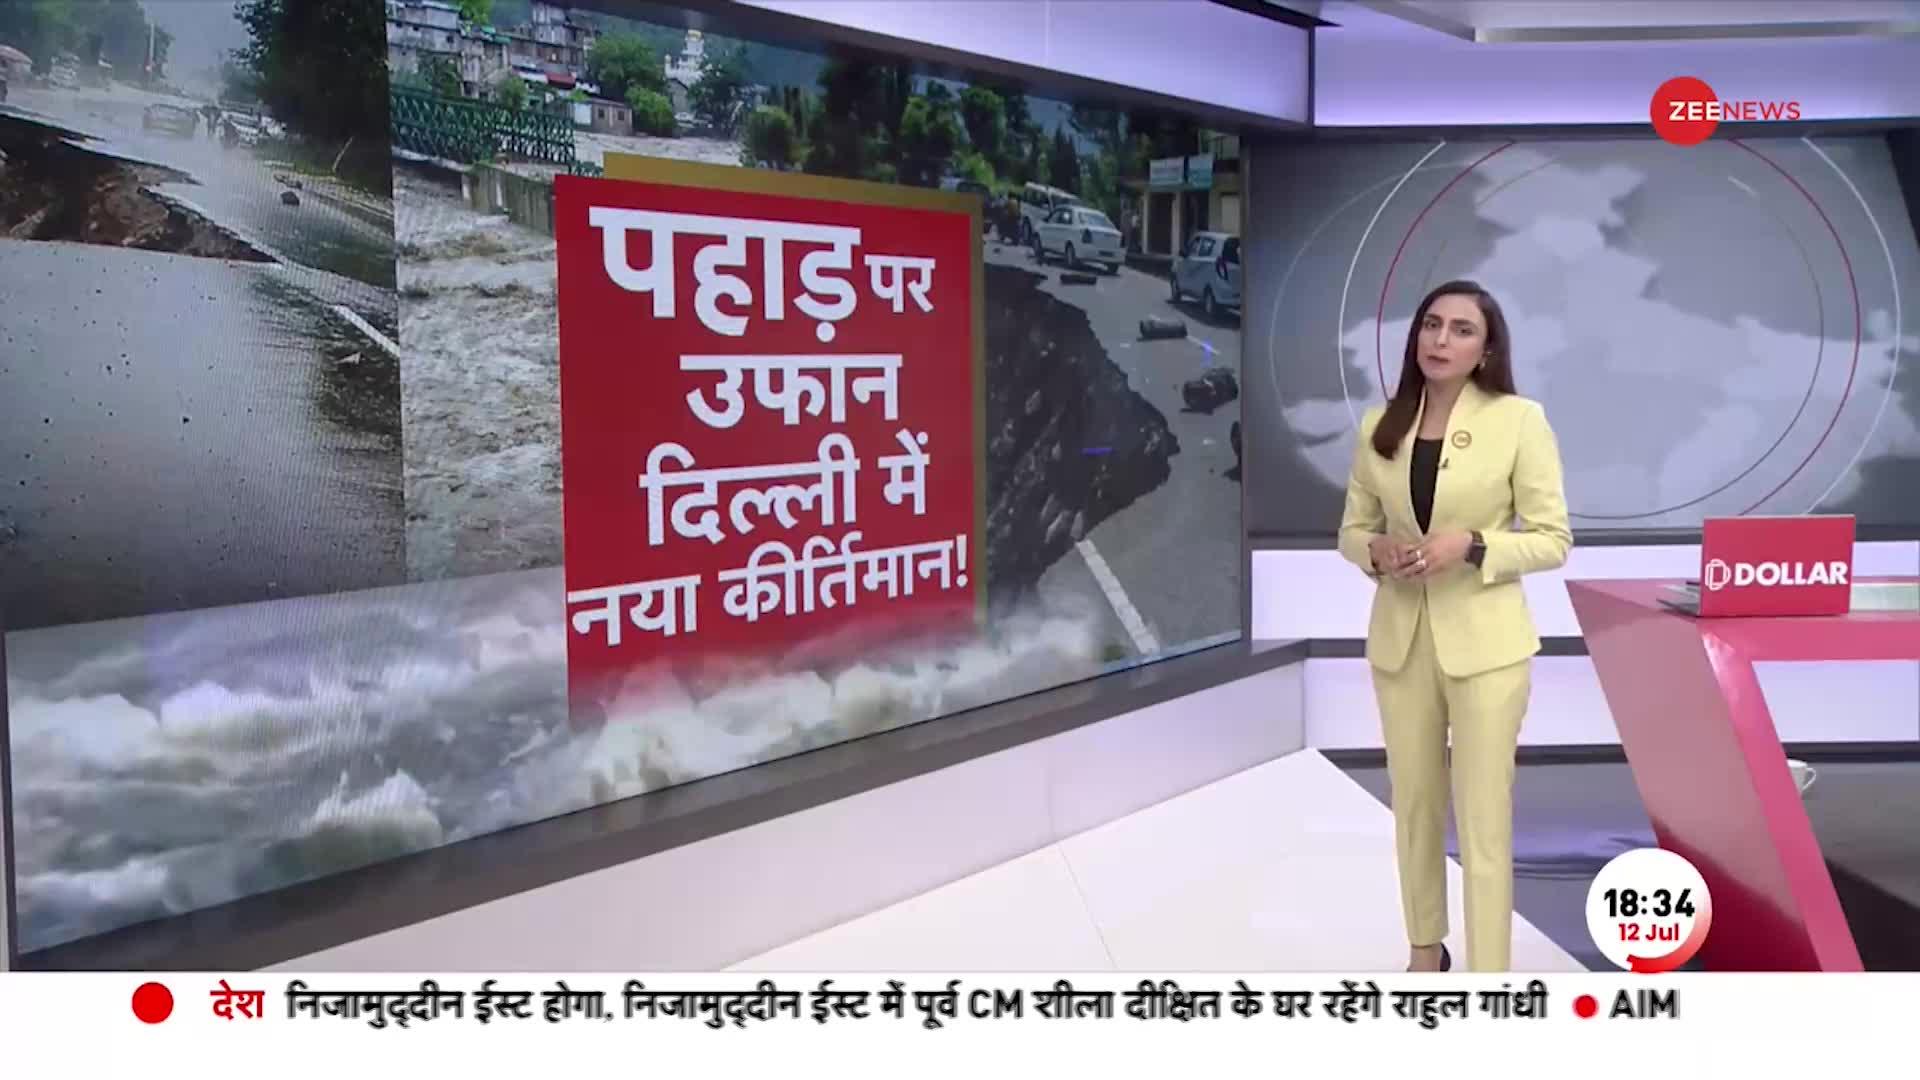 Deshhit: Himachal Uttarakhand में बाढ़ बारिश से हर ओर तबाही का मंजर, ये बारिश मार डालेगी